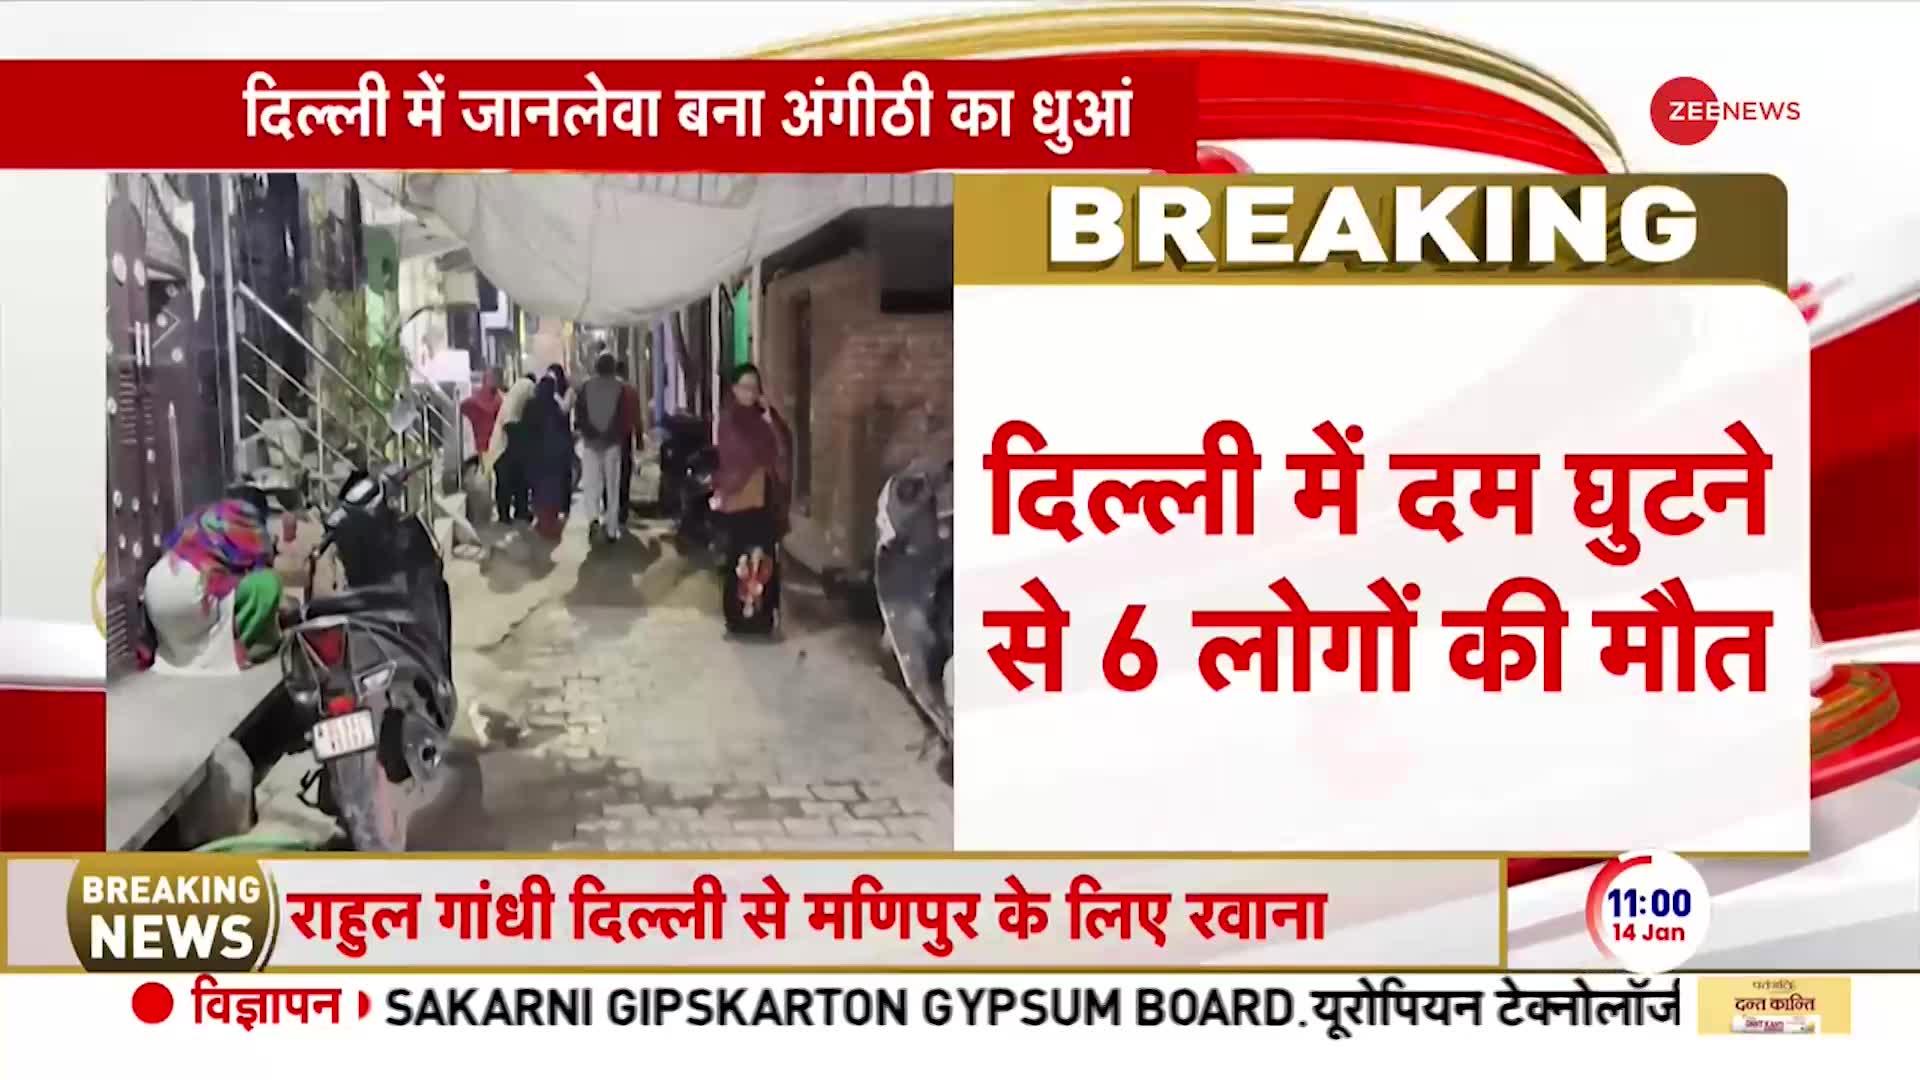 Delhi Breaking News: दिल्ली में दम घुटने से 6 लोगों की मौत